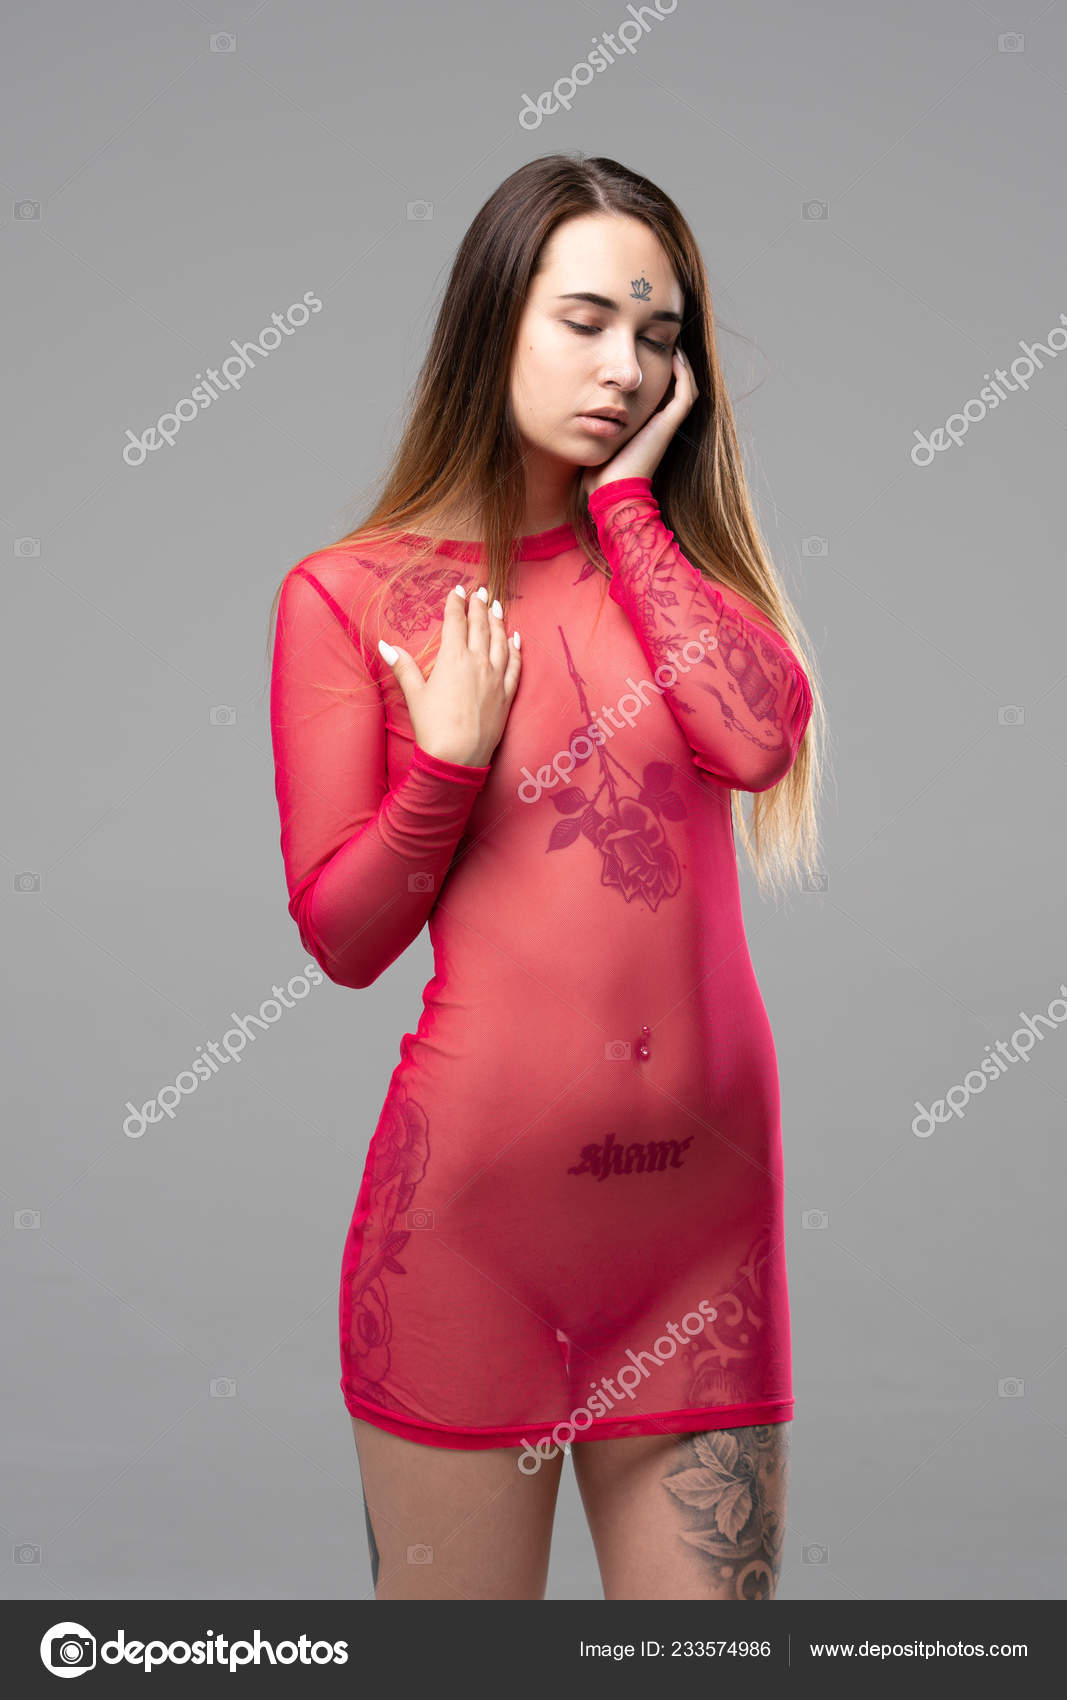 https://st4n.depositphotos.com/10086424/23357/i/1600/depositphotos_233574986-stock-photo-young-beautiful-girl-posing-nude.jpg